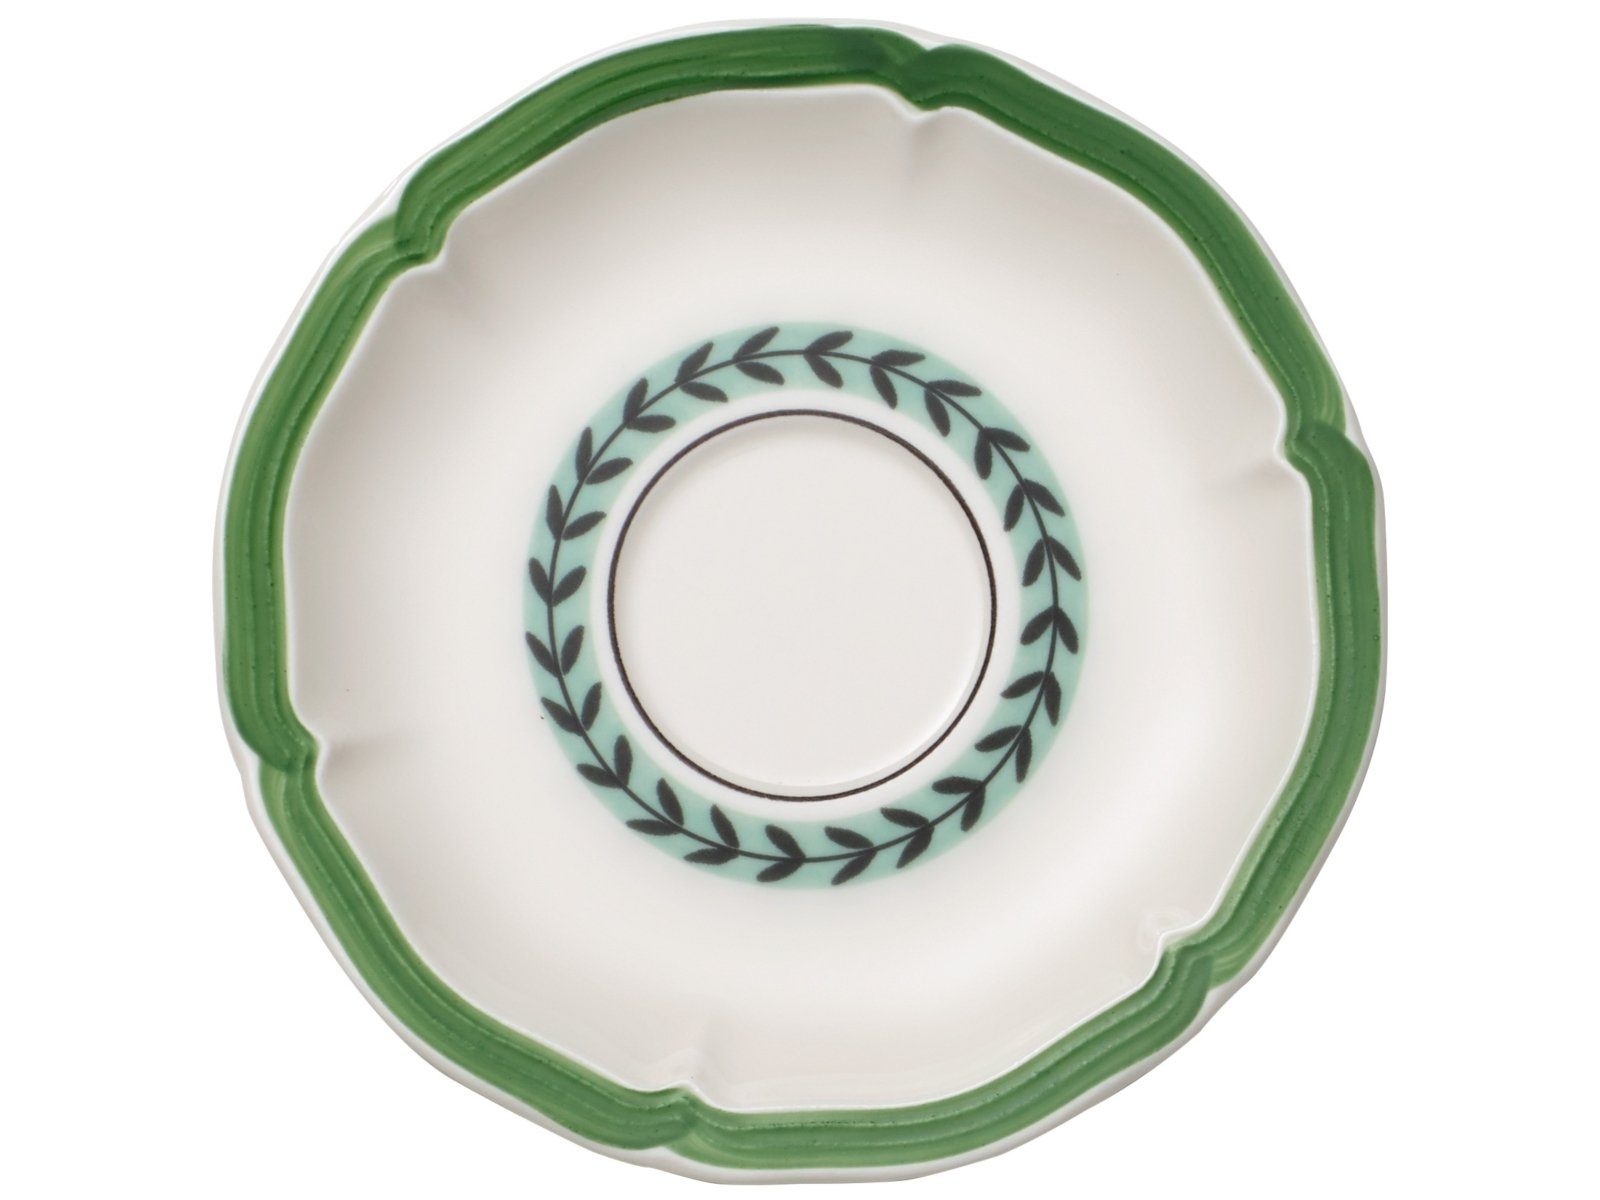 Villeroy & Boch Latte-Macchiato-Glas French Garden Green Line Frühstücksuntertasse 17cm, Premium Porcelain